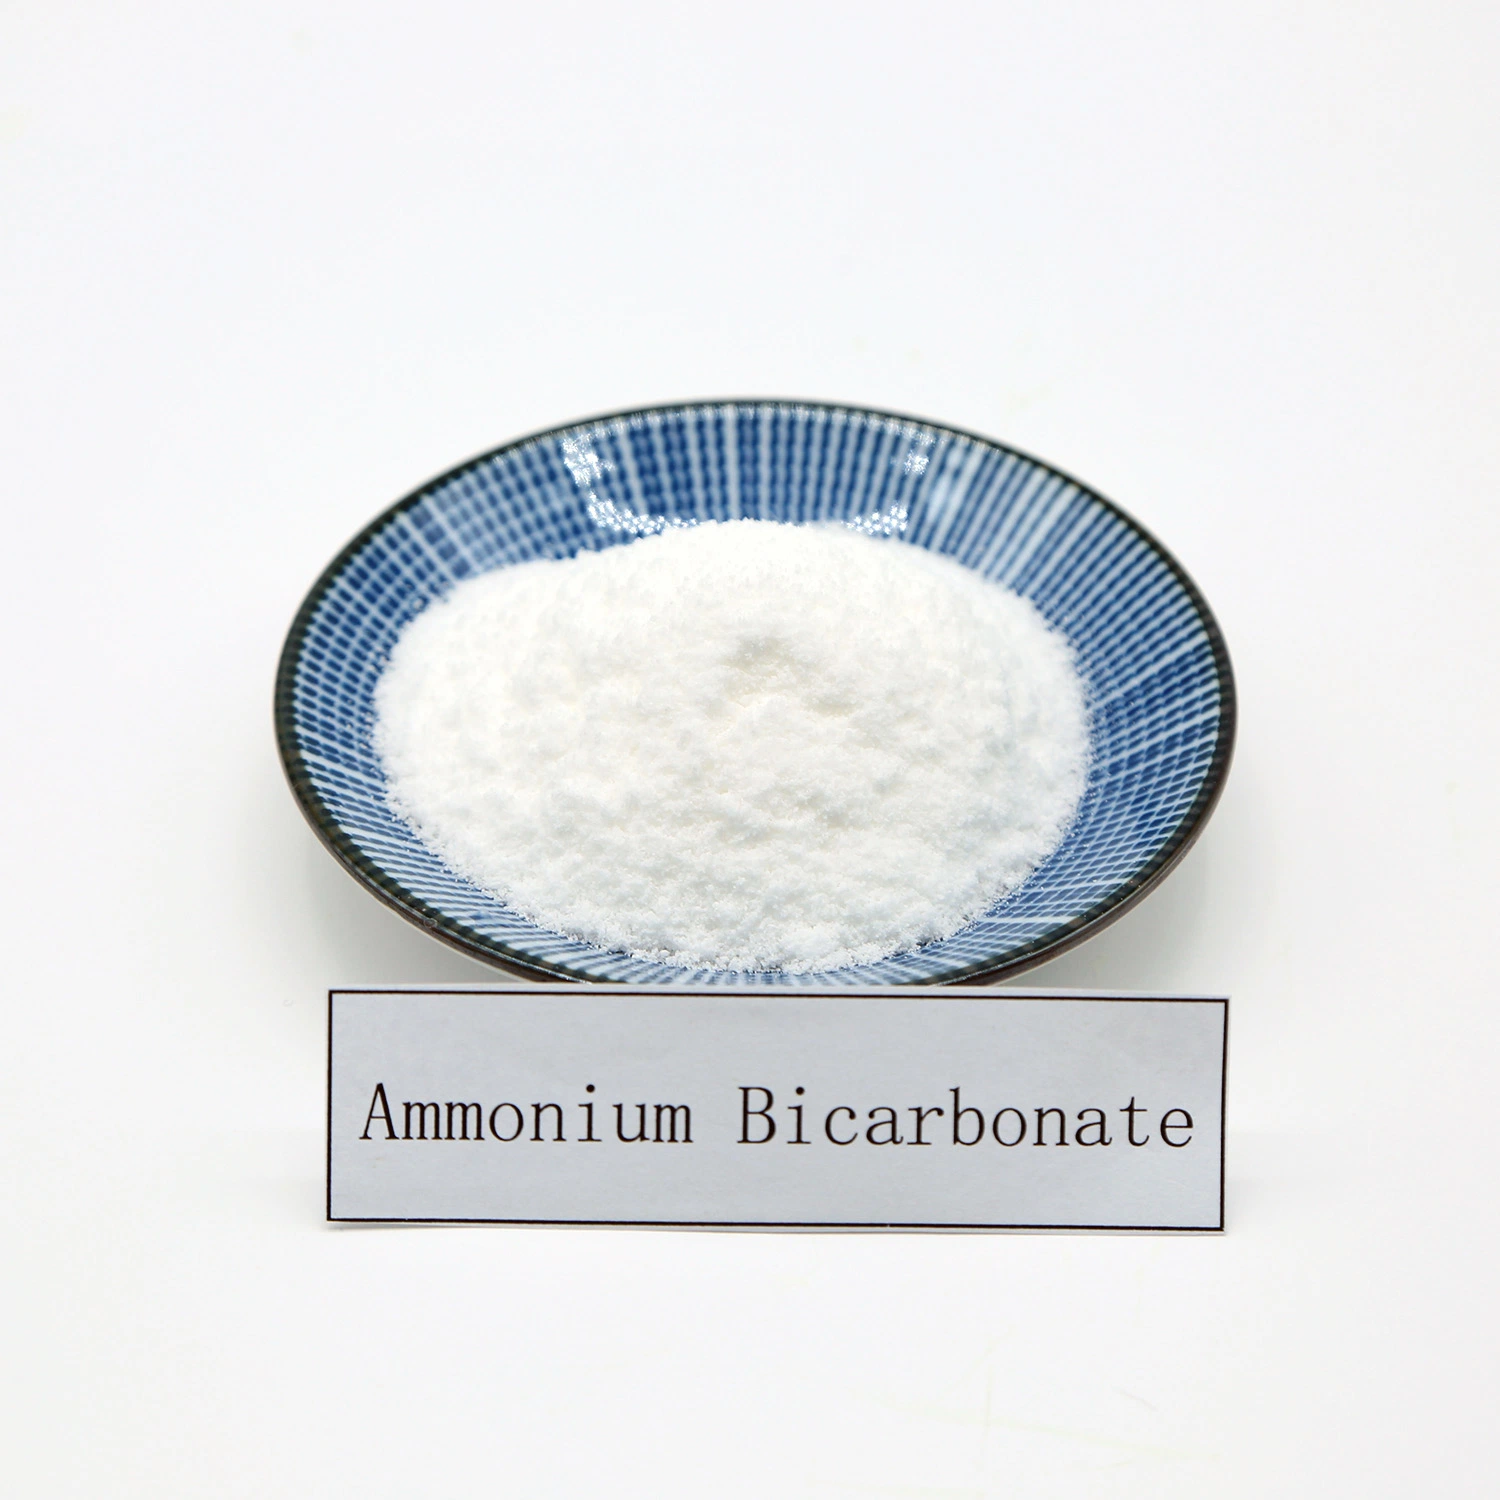 Food Grade Ammonium Bicarbonate for Cake